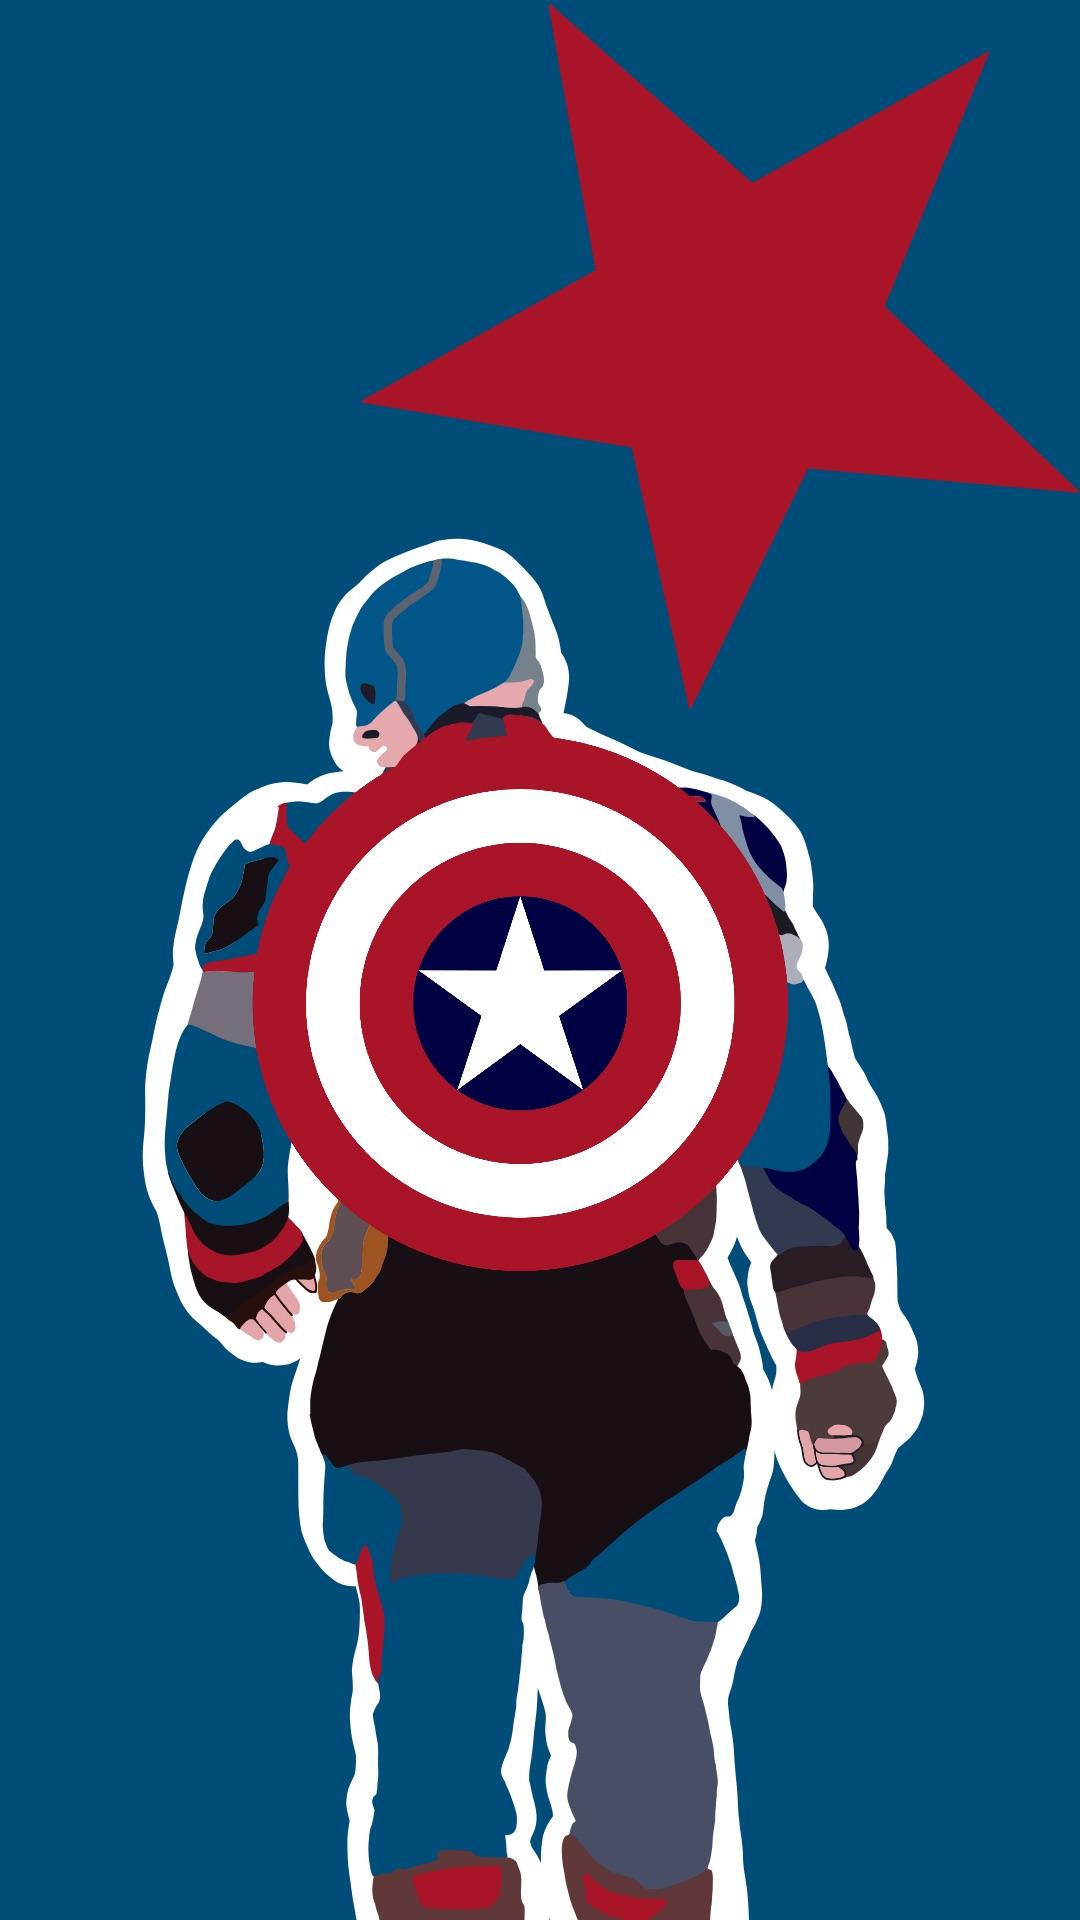 A Captain America wallpaper I made!